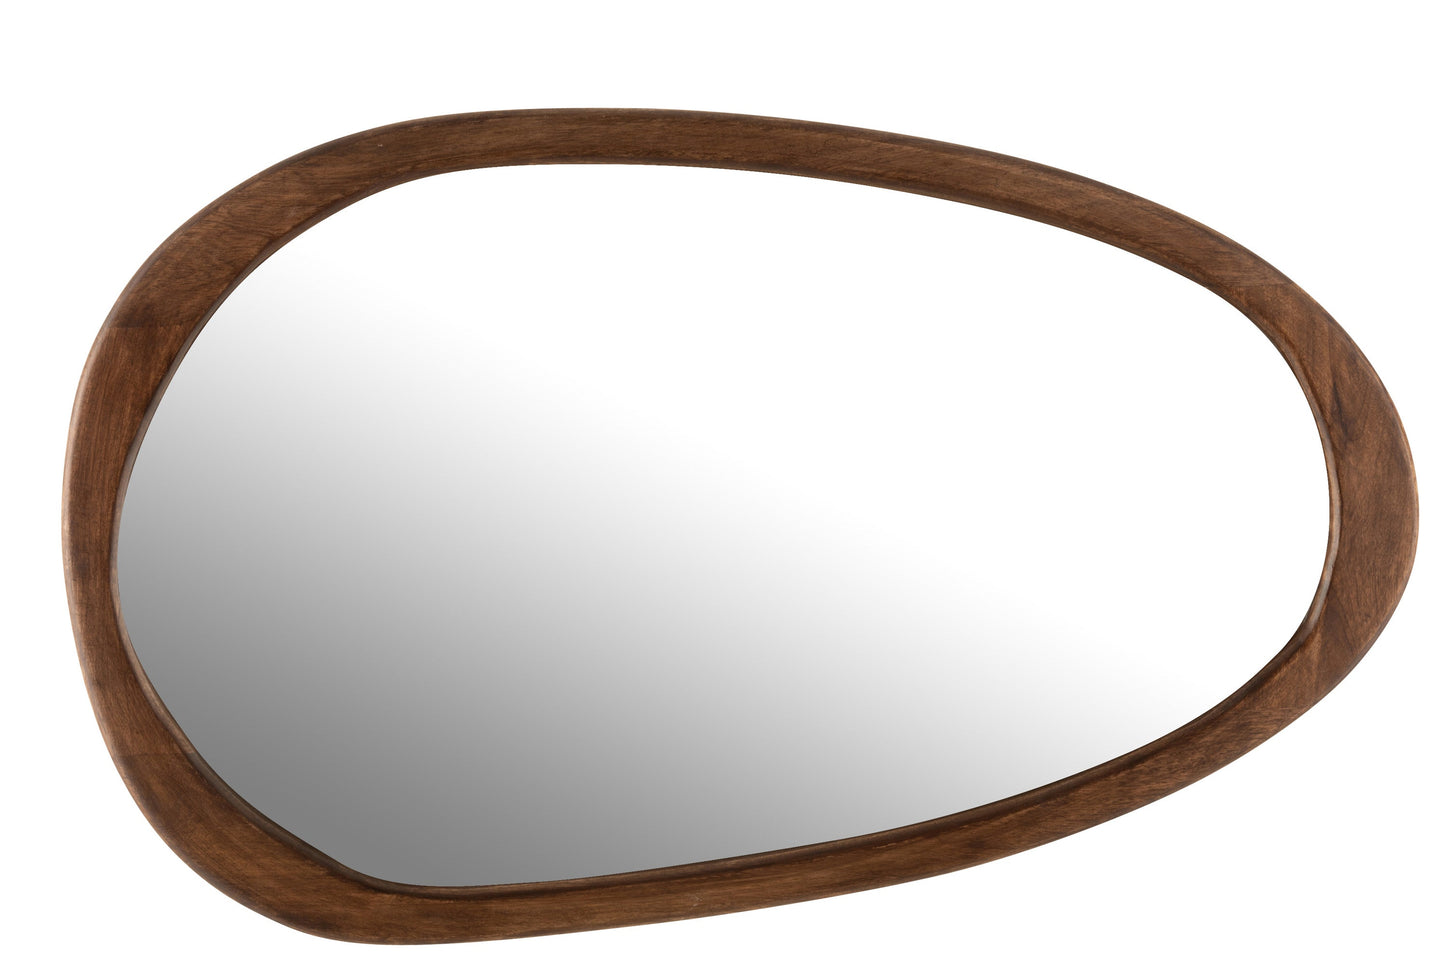 Irregular Brown Wood Mirror